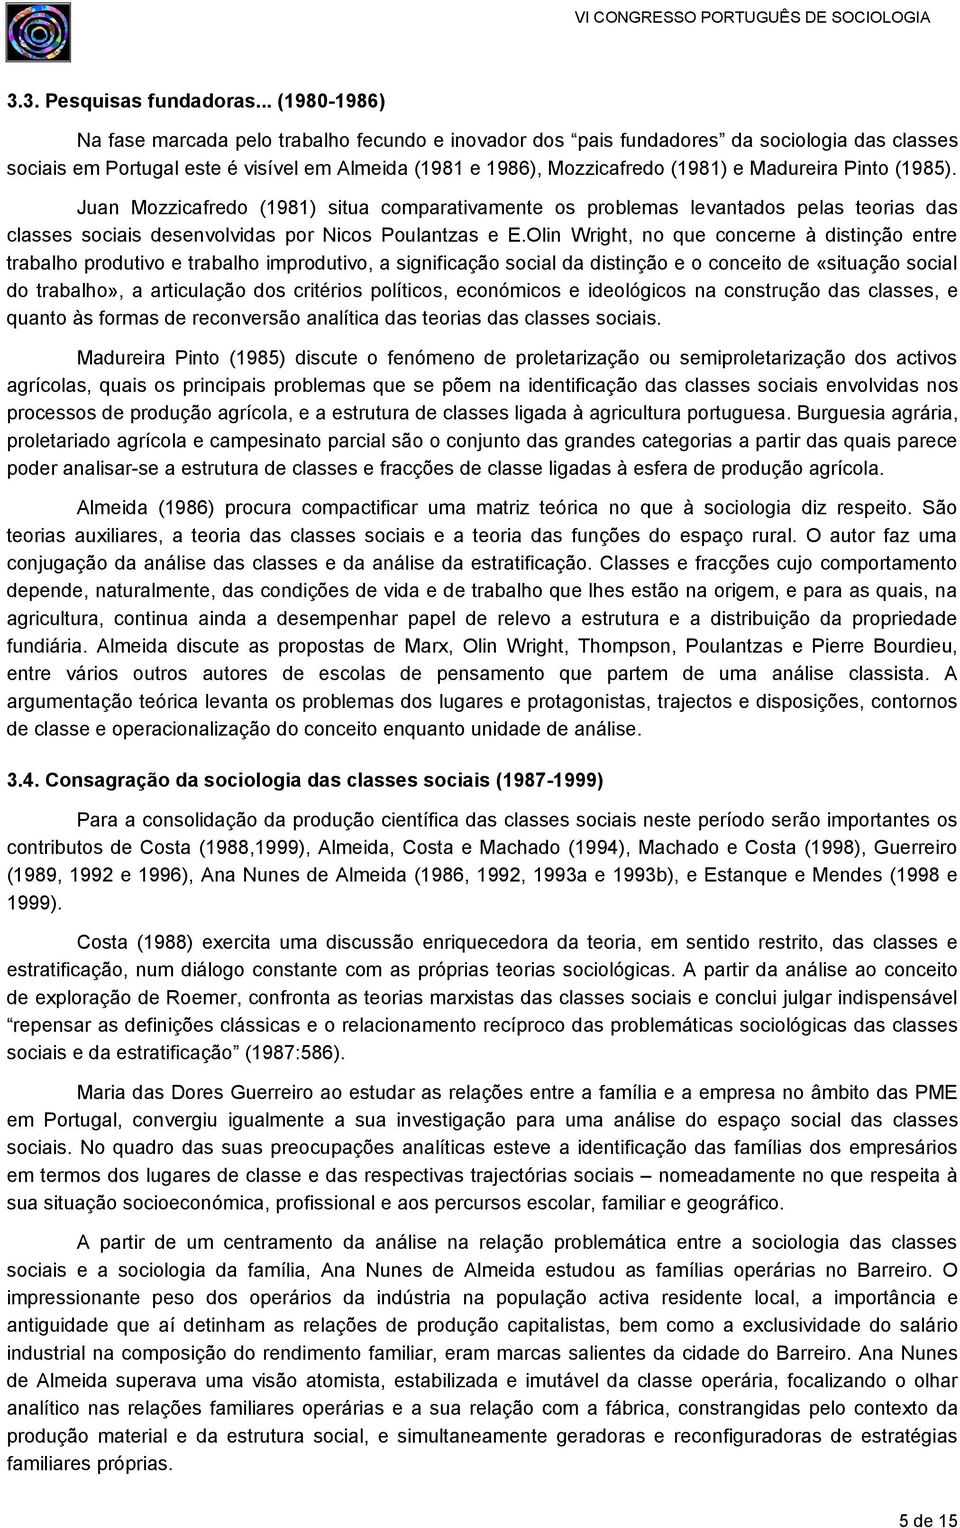 Madureira Pinto (1985). Juan Mozzicafredo (1981) situa comparativamente os problemas levantados pelas teorias das classes sociais desenvolvidas por Nicos Poulantzas e E.